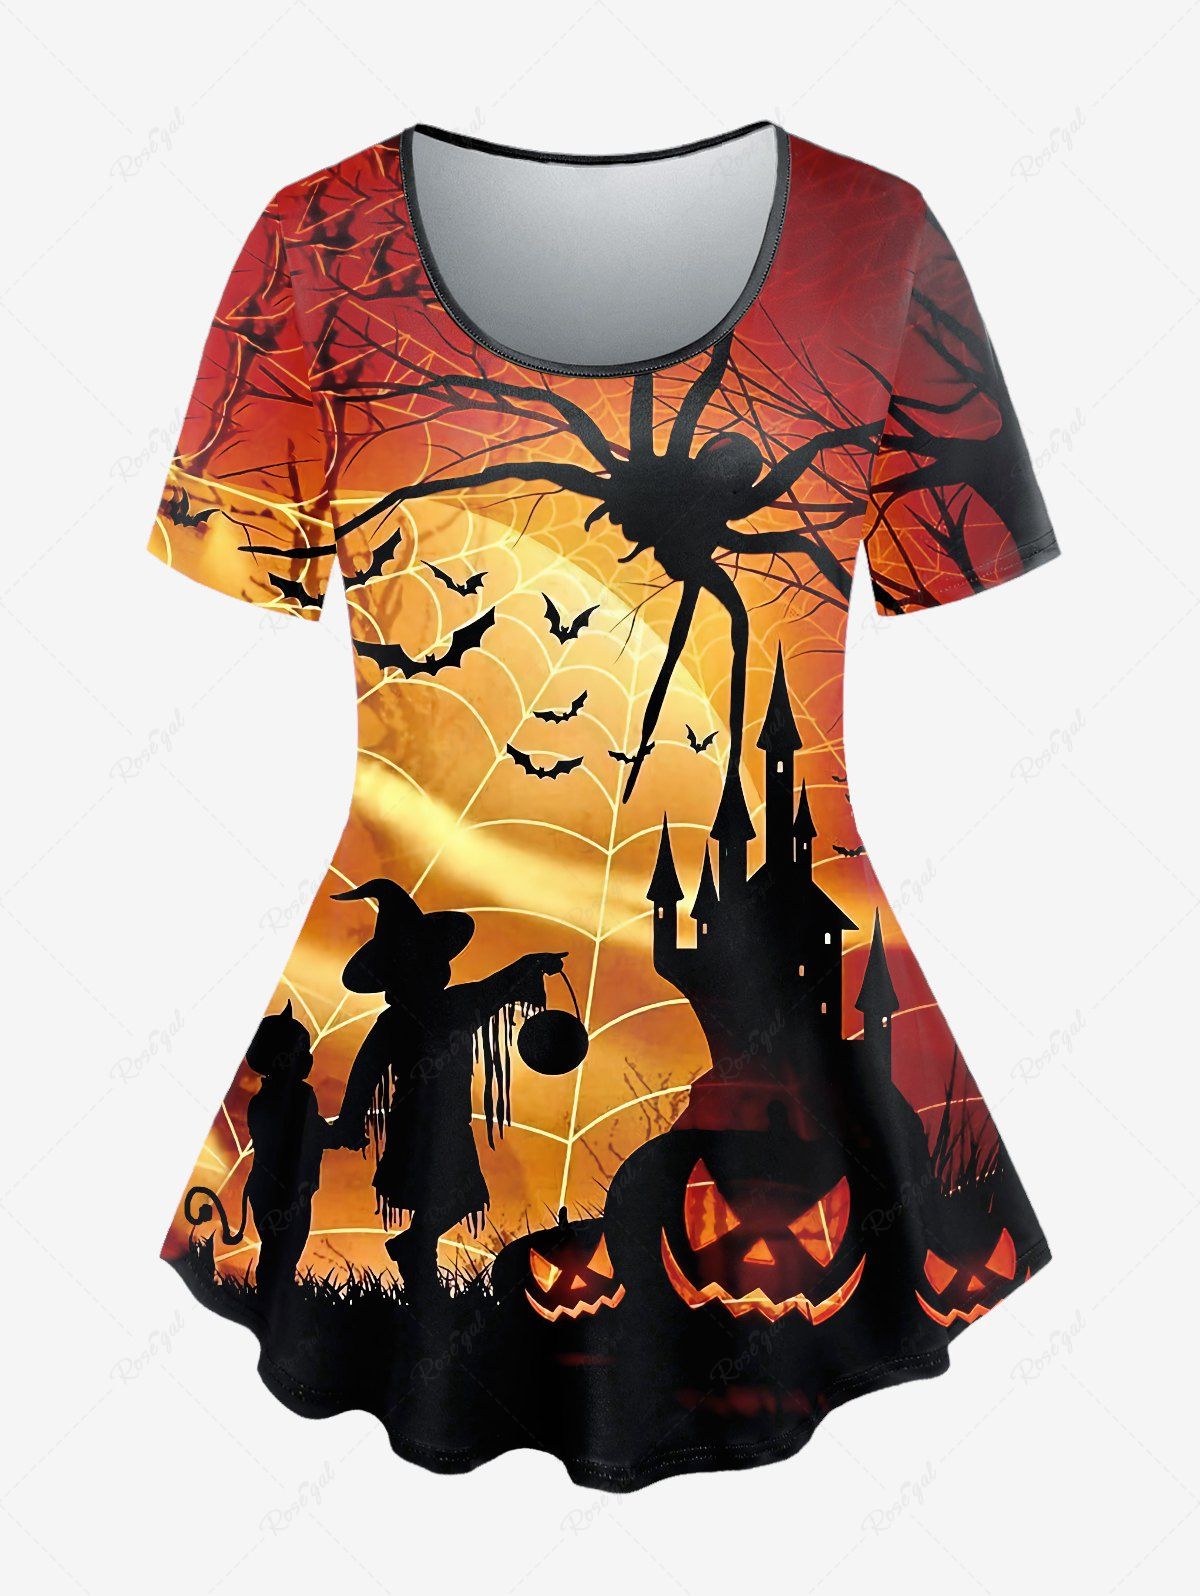 T-shirt D'Halloween à Imprimé Toile D'Araignée Chauve-souris et Citrouille de Grande Taille café 1X | US 14-16